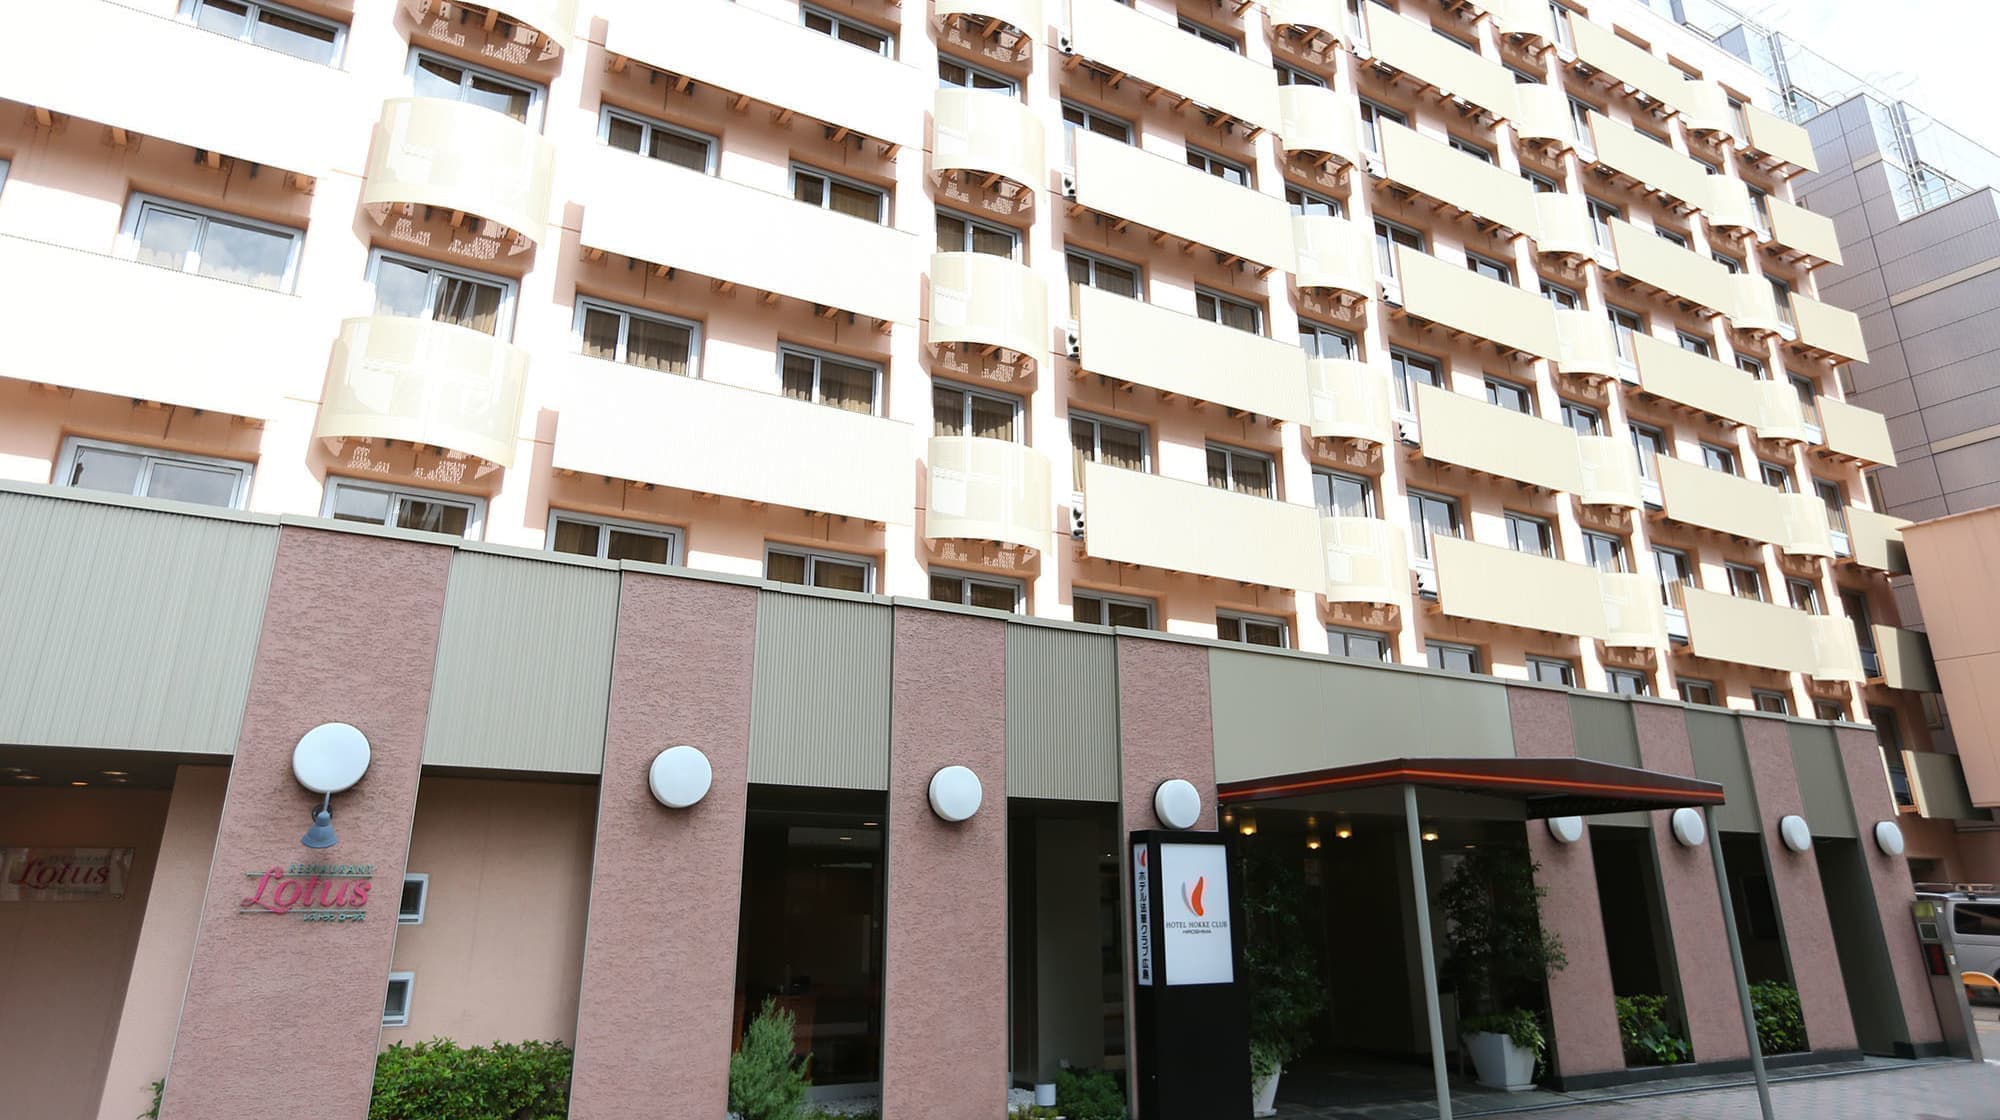 ホテル法華クラブ広島